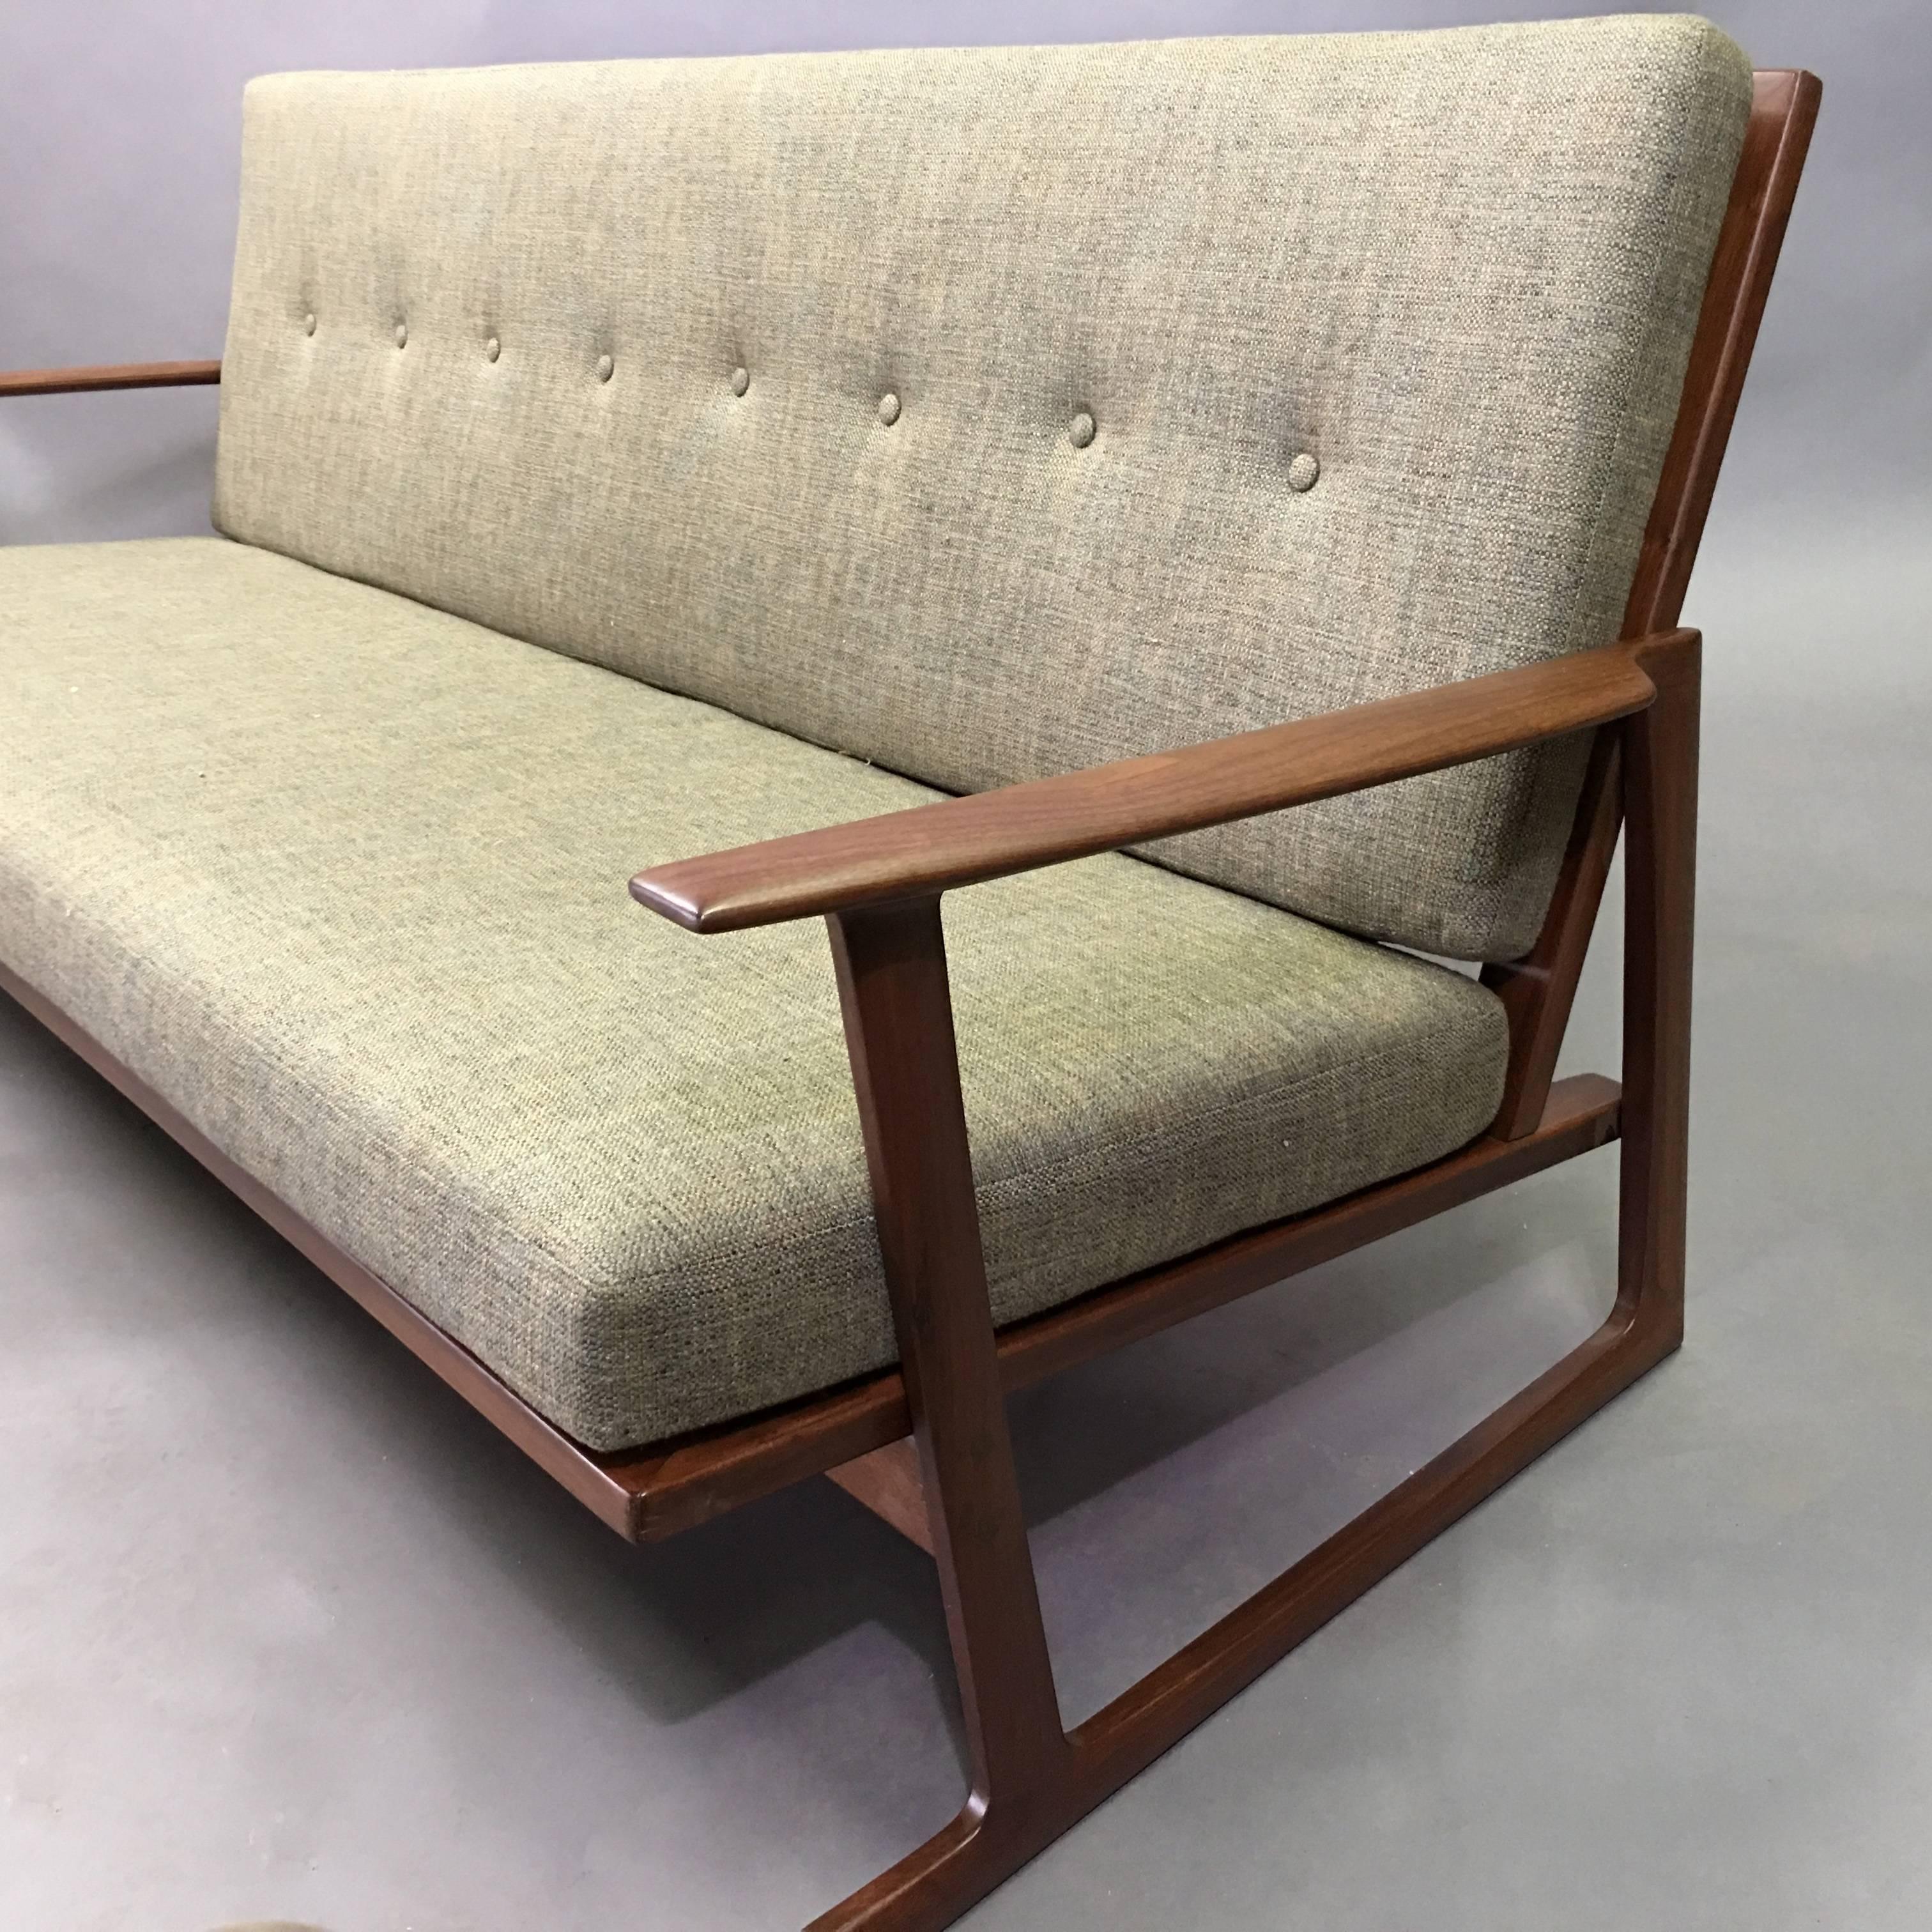 Mid-20th Century Danish Modern Teak Frame Sofa by Ib Kofod-Larsen for Selig